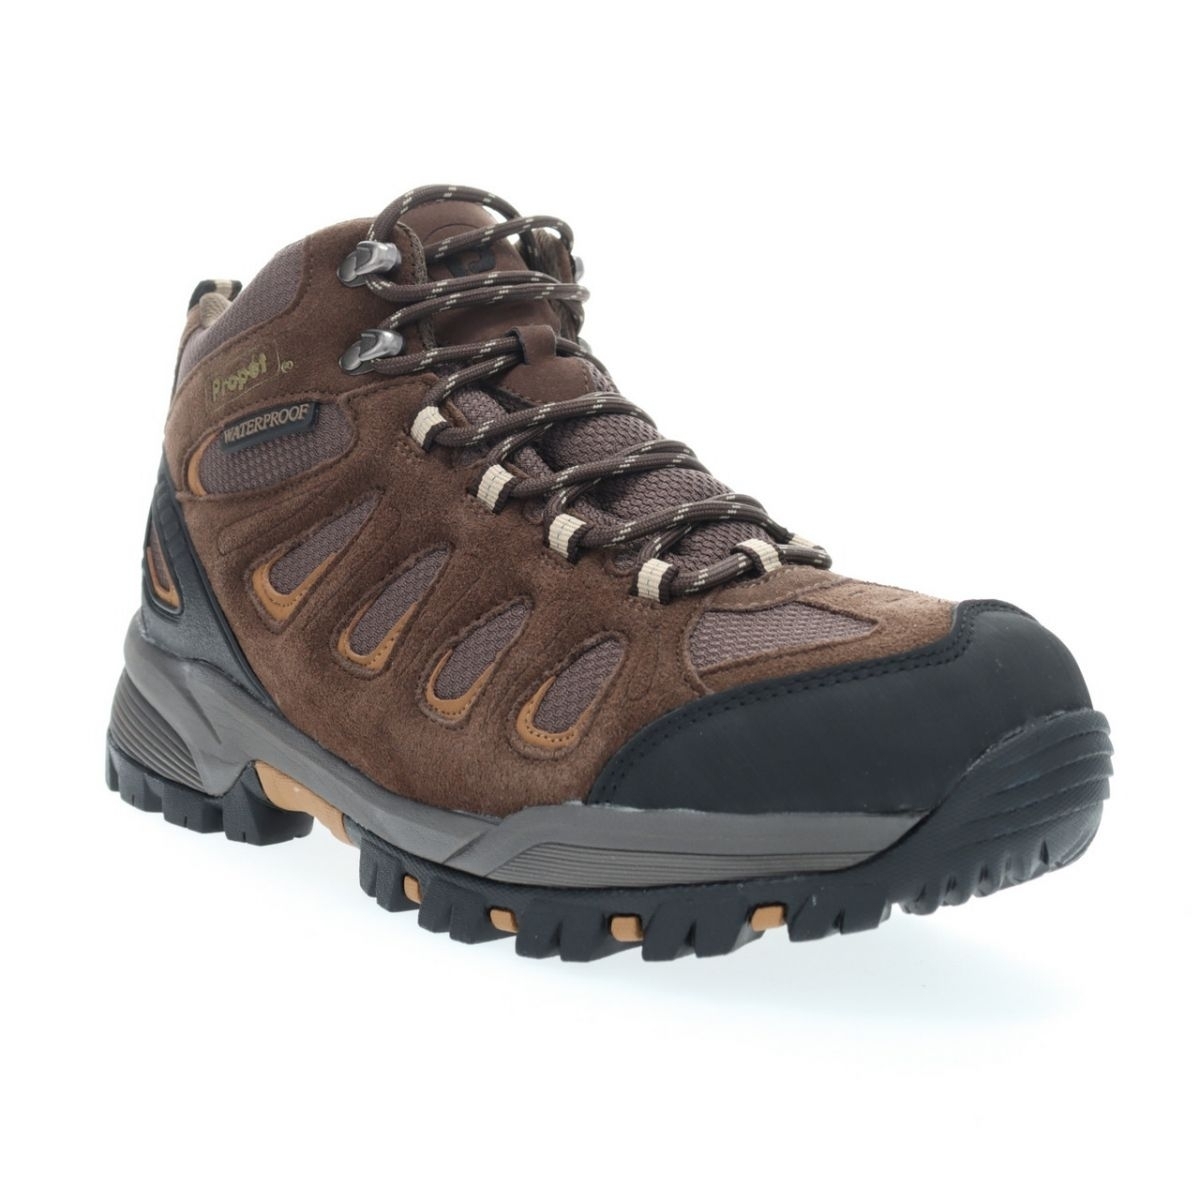 Propet Men's Ridge Walker Hiking Boot Brown - M3599BR 8 XX US Men BROWN - BROWN, 10 X-Wide